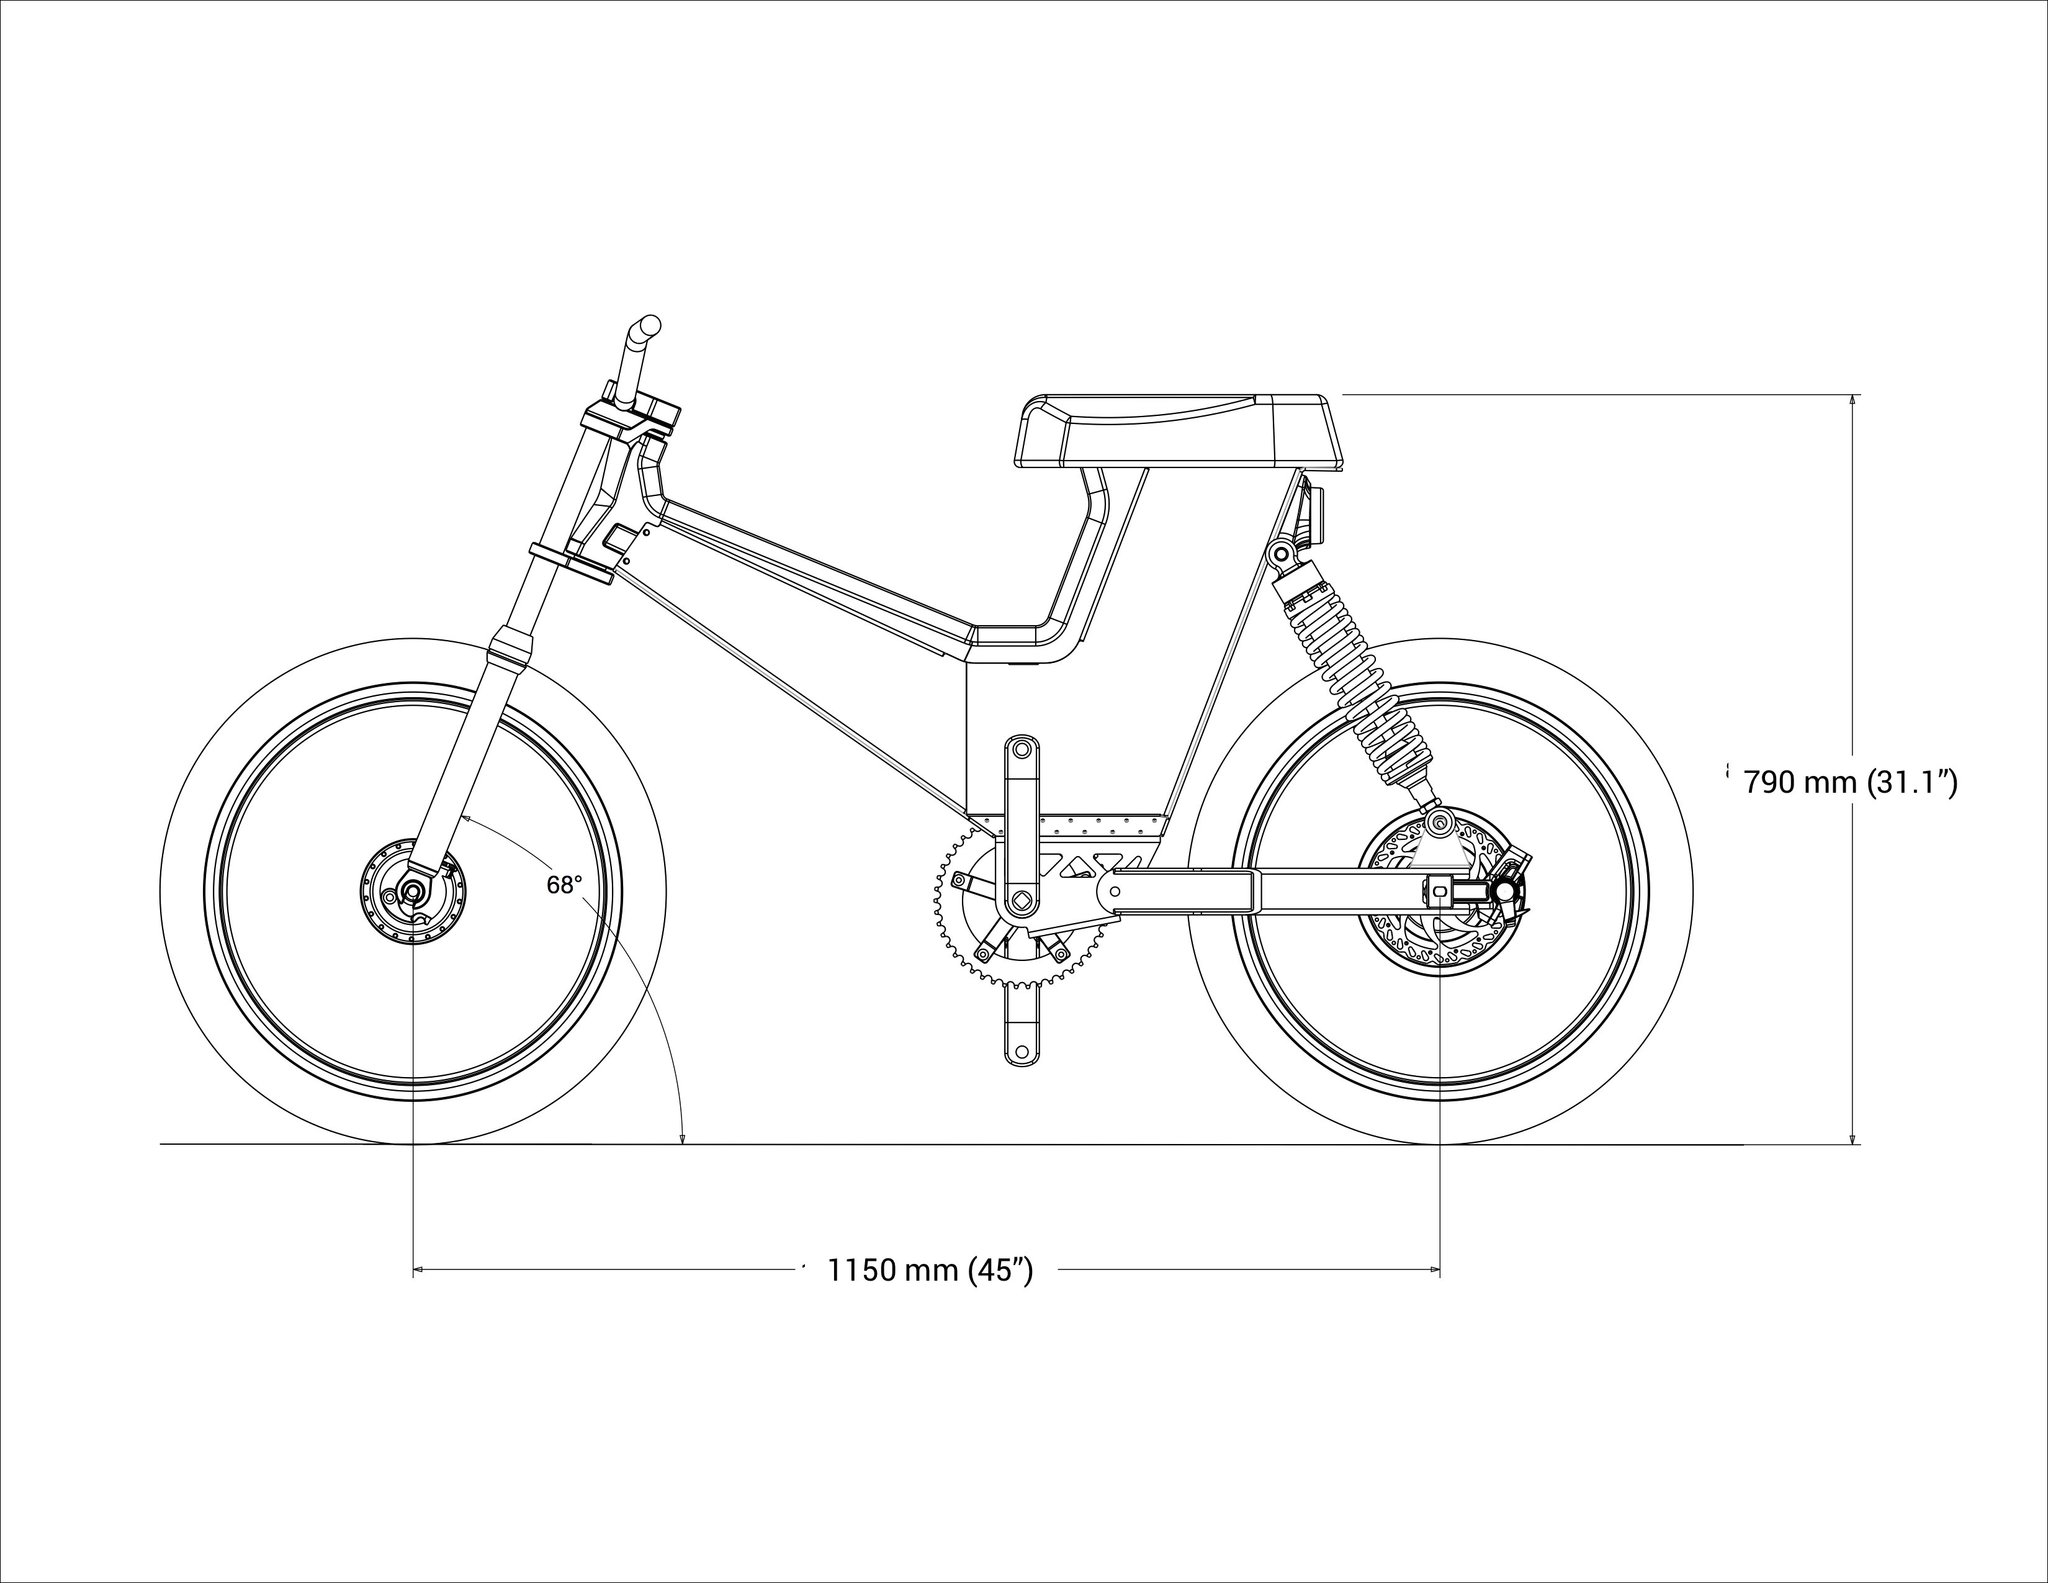 Electric : Suru unveils first E Scrambler Bike - Adrenaline Culture of ...